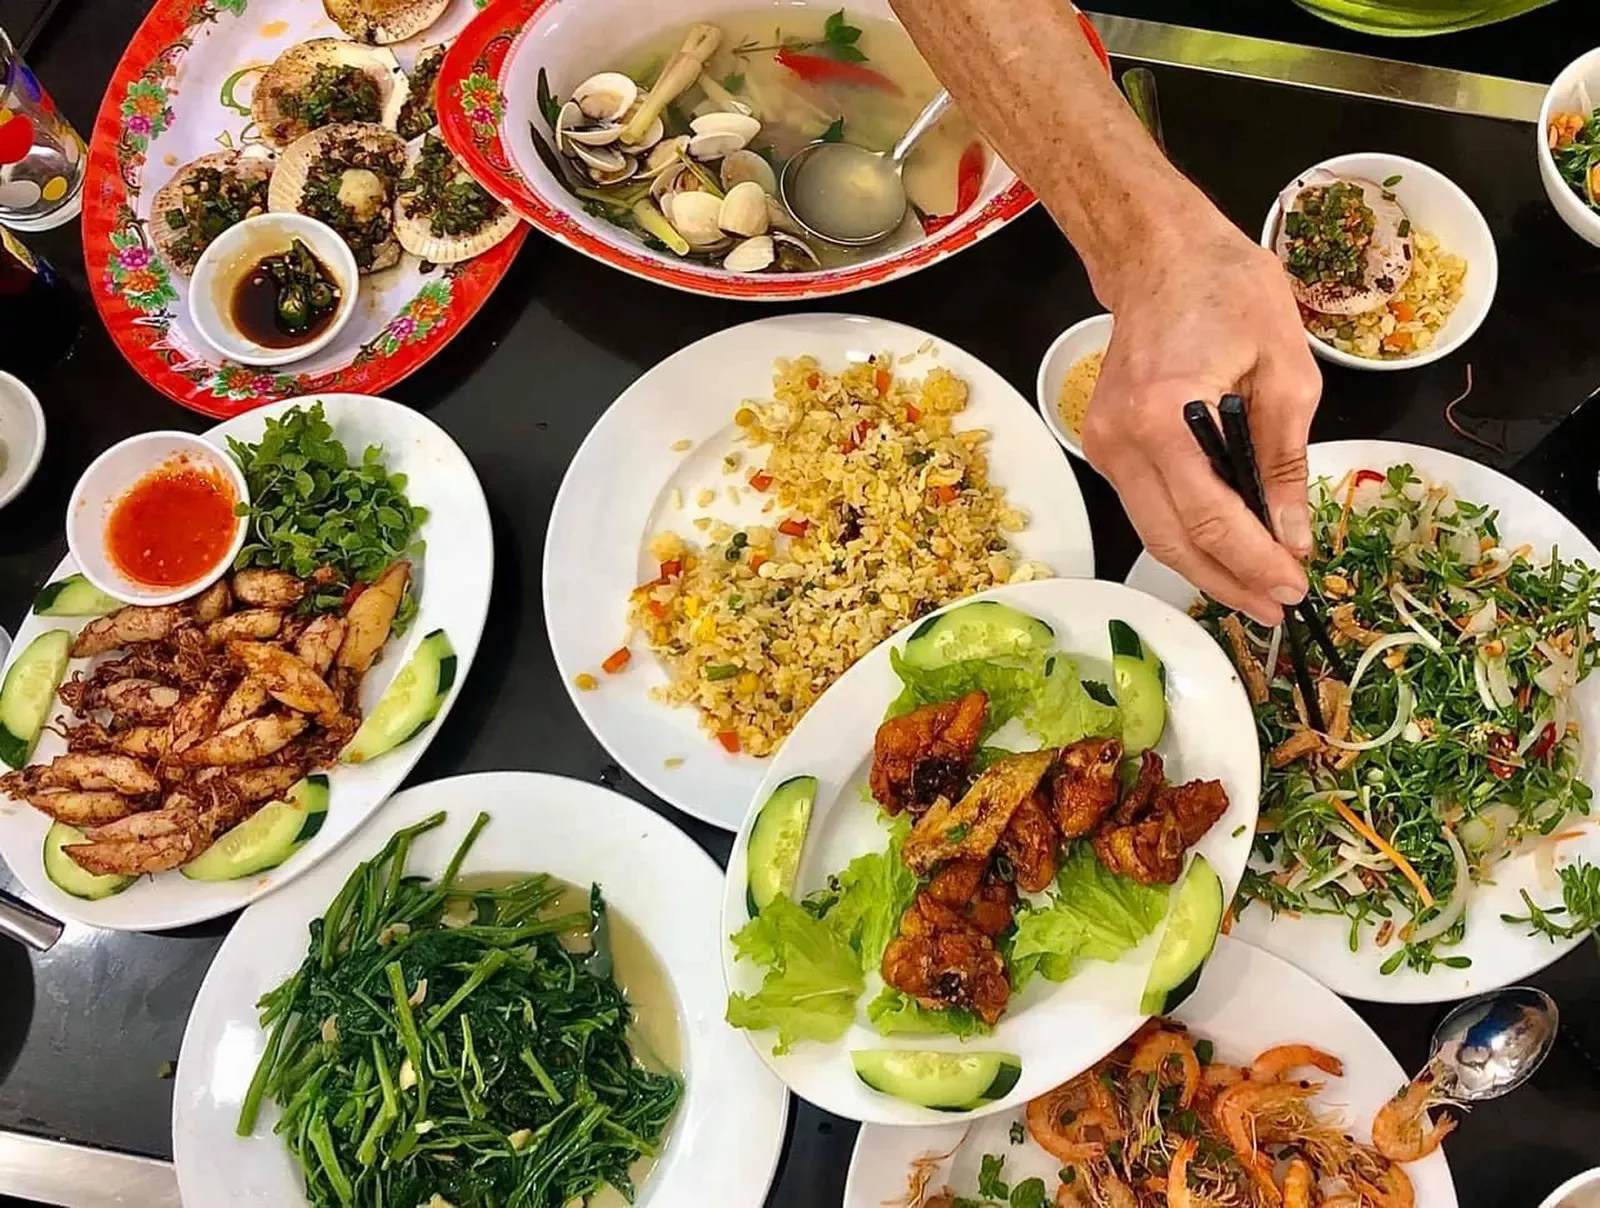 Spread of Vietnamese food, fried rice, meat, seafood, veggies, etc.